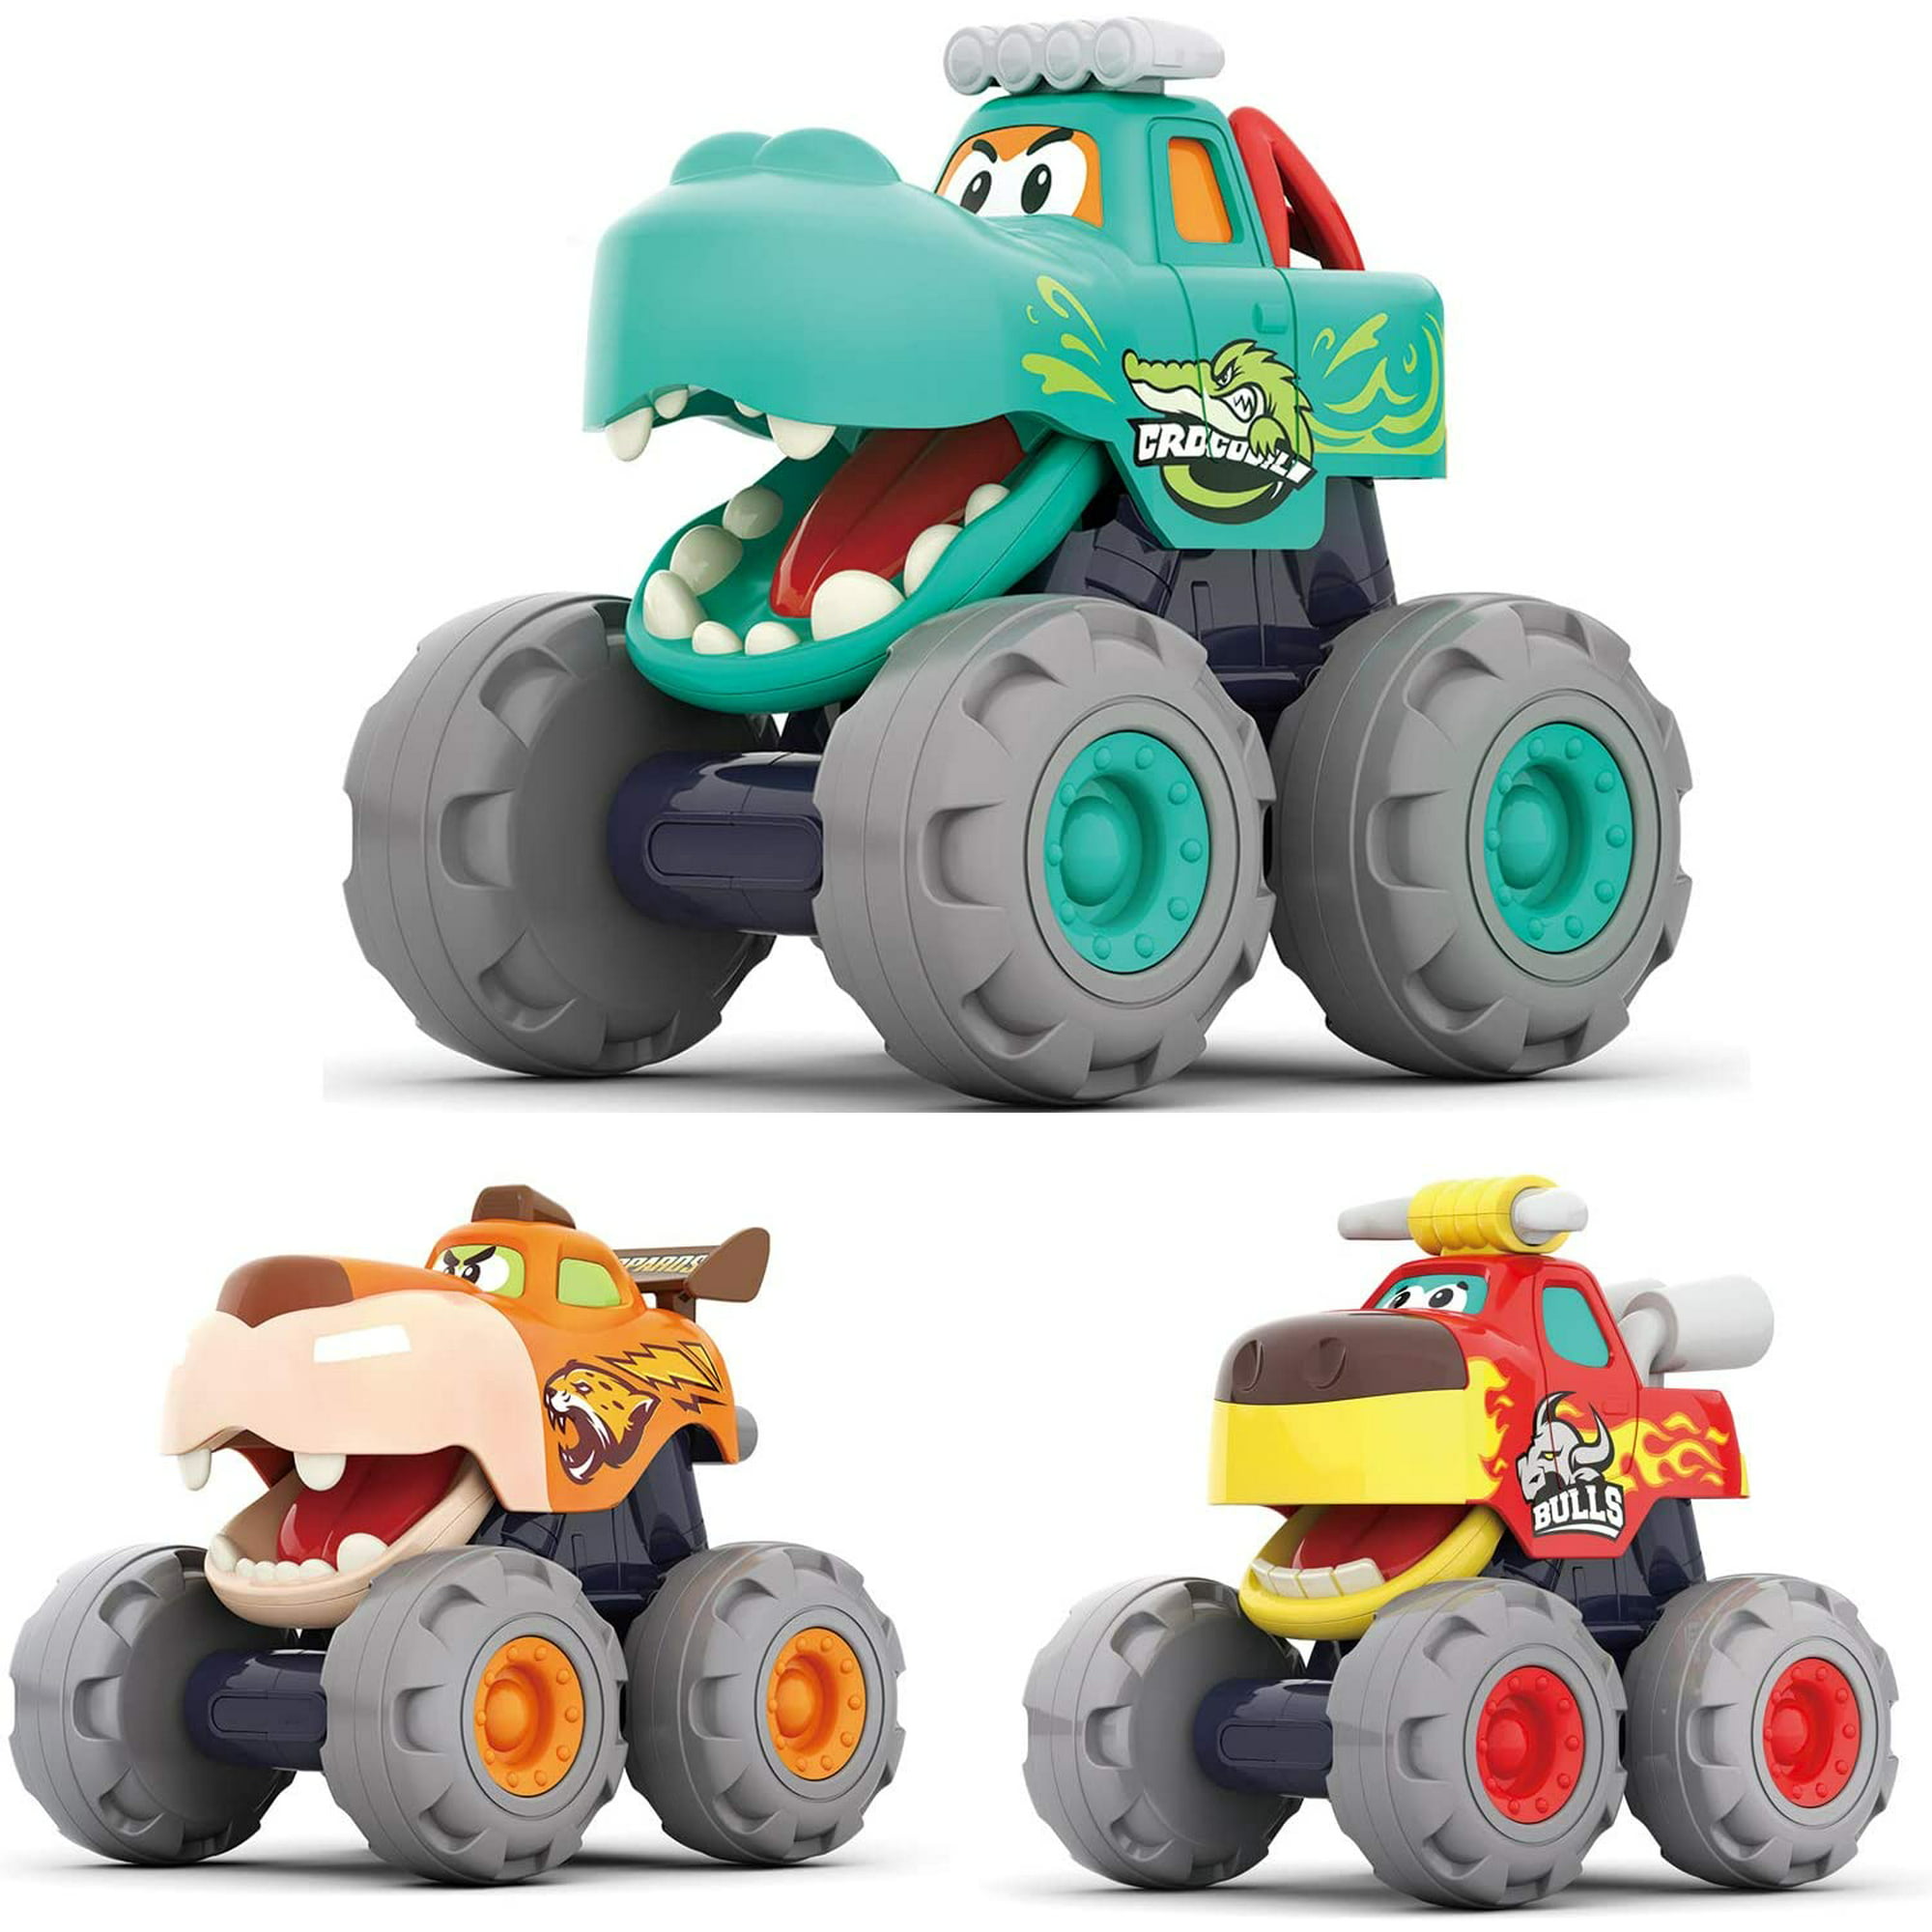 baby boy toy trucks